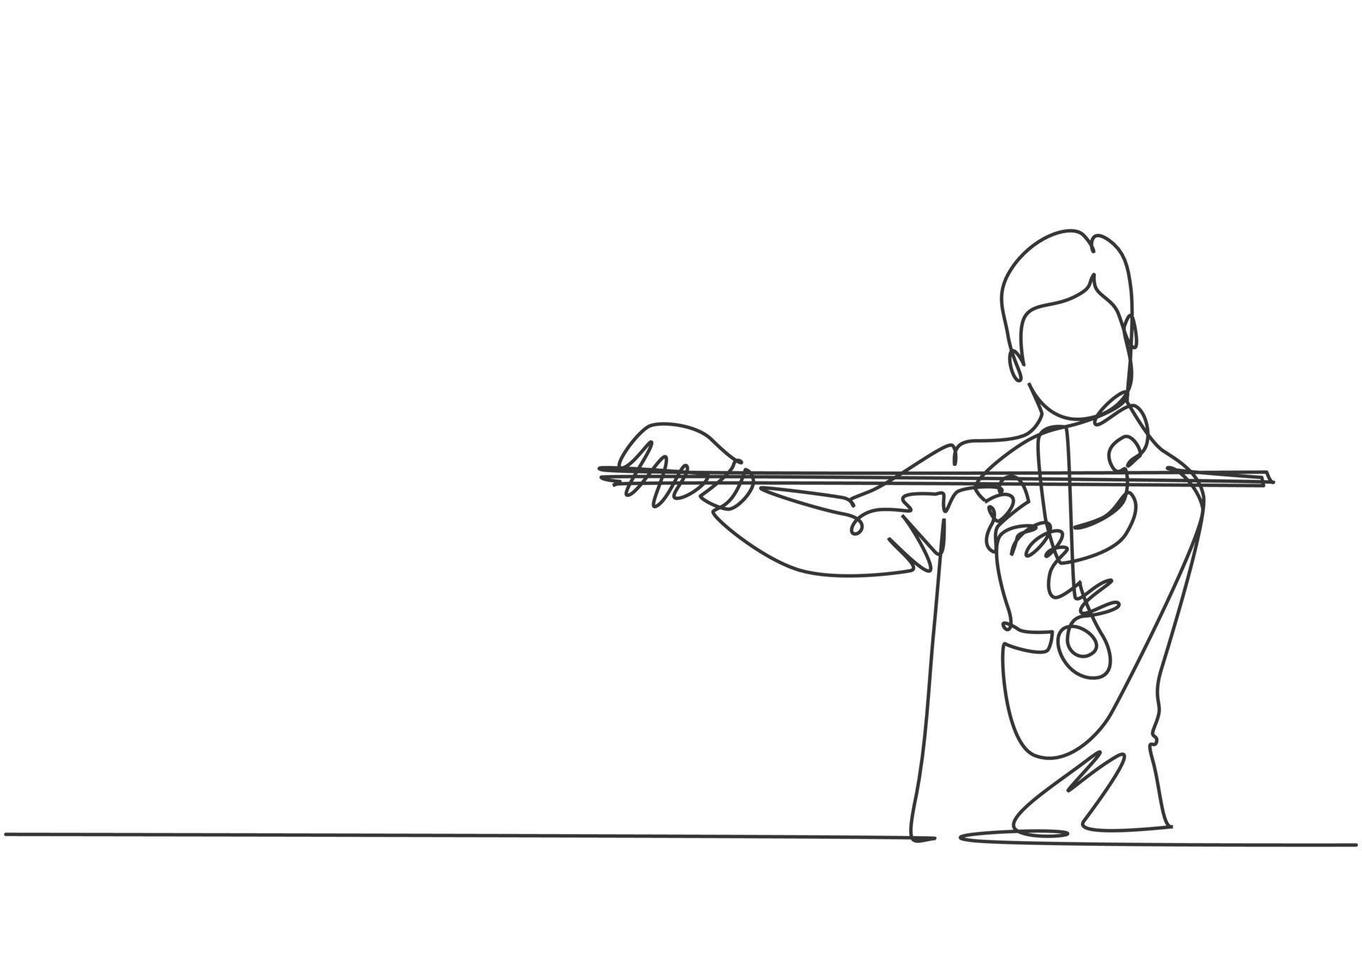 um único desenho de um violinista se apresentando para tocar violino em um festival de música. moderno músico artista desempenho conceito linha contínua desenhar design gráfico ilustração vetorial vetor